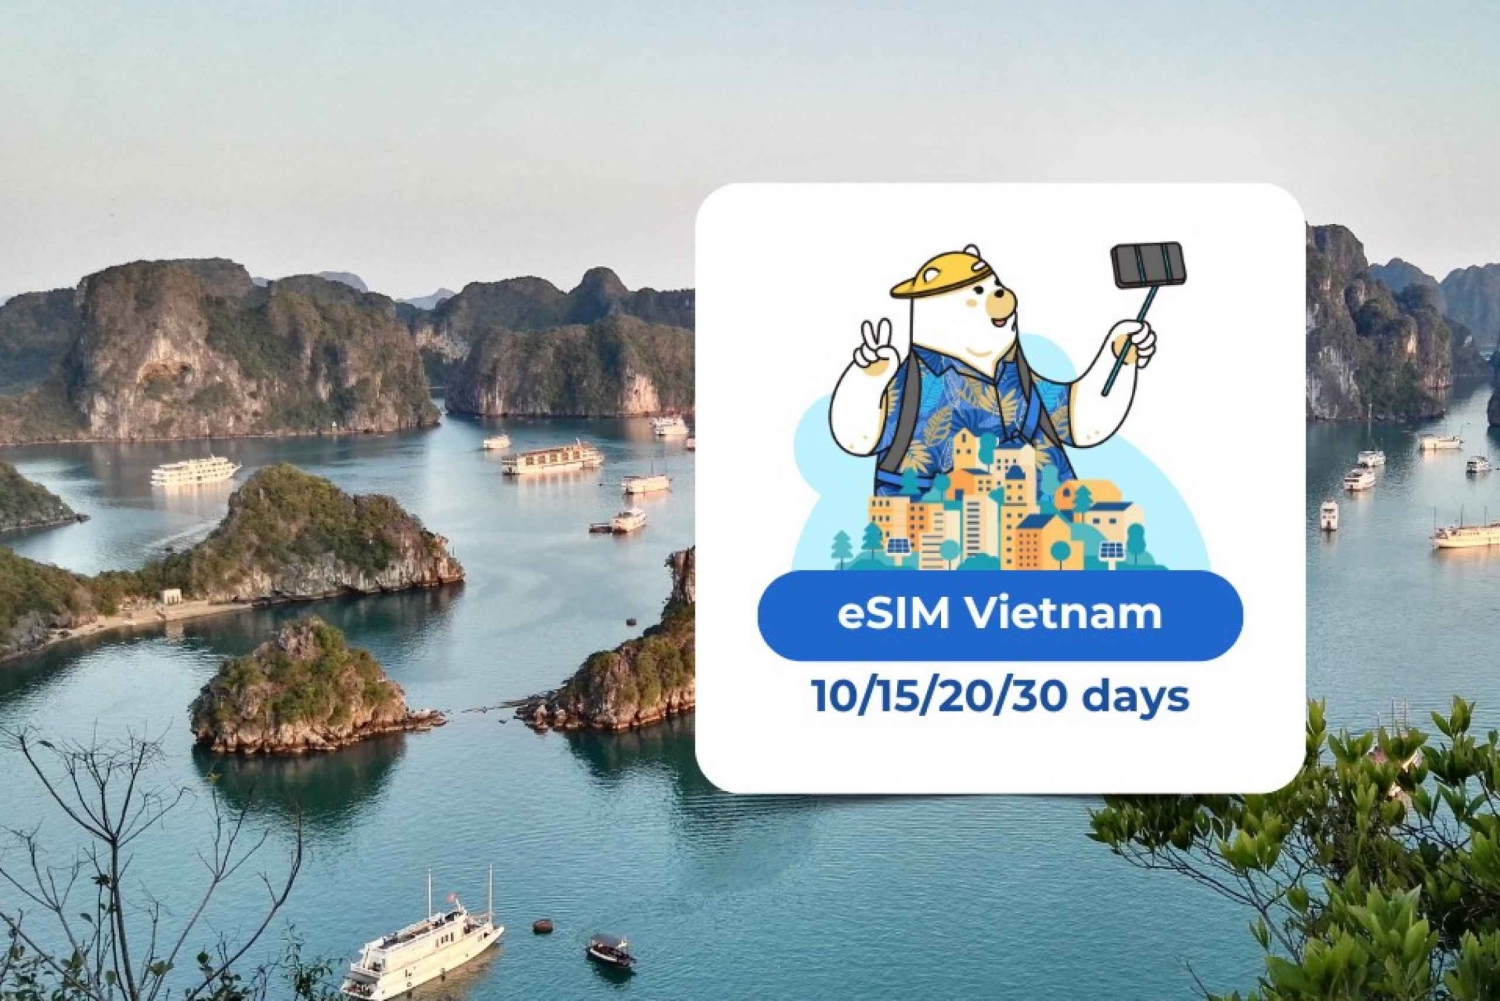 Vietnã eSIM: Plano de dados móveis em roaming 10/15/20/30 dias